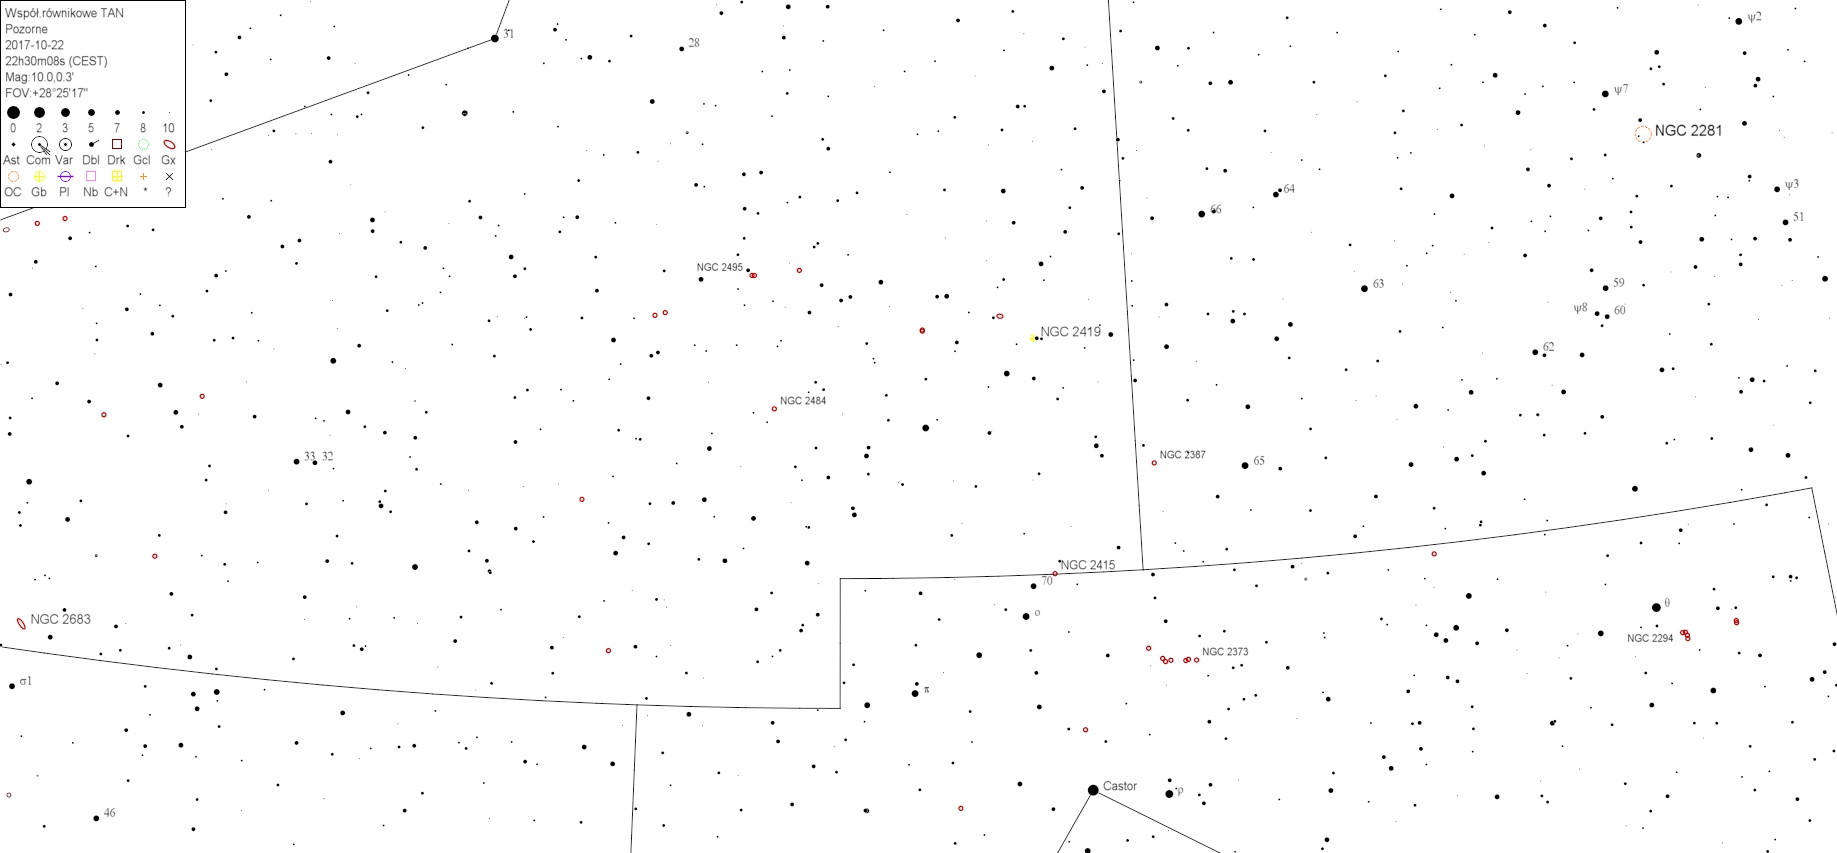 NGC2419v3.jpg